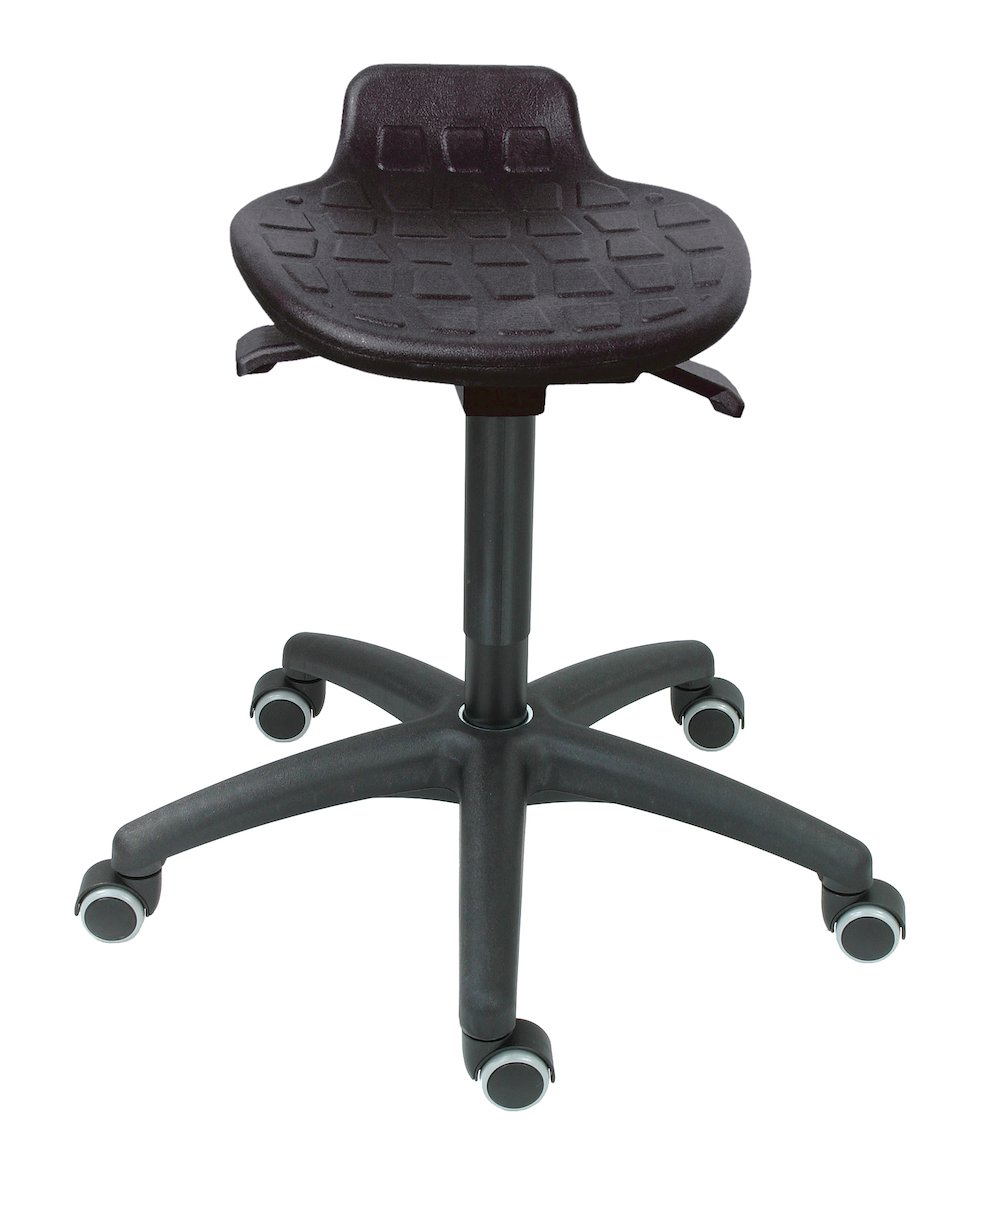 Hocker Orlando | Sitzhöhe 45-64cm | Ø 63cm | Tragfähigkeit 110kg | Polyurethane-Sitz | Kunststoff-Fußkreuz mit Rollen | Schwarz